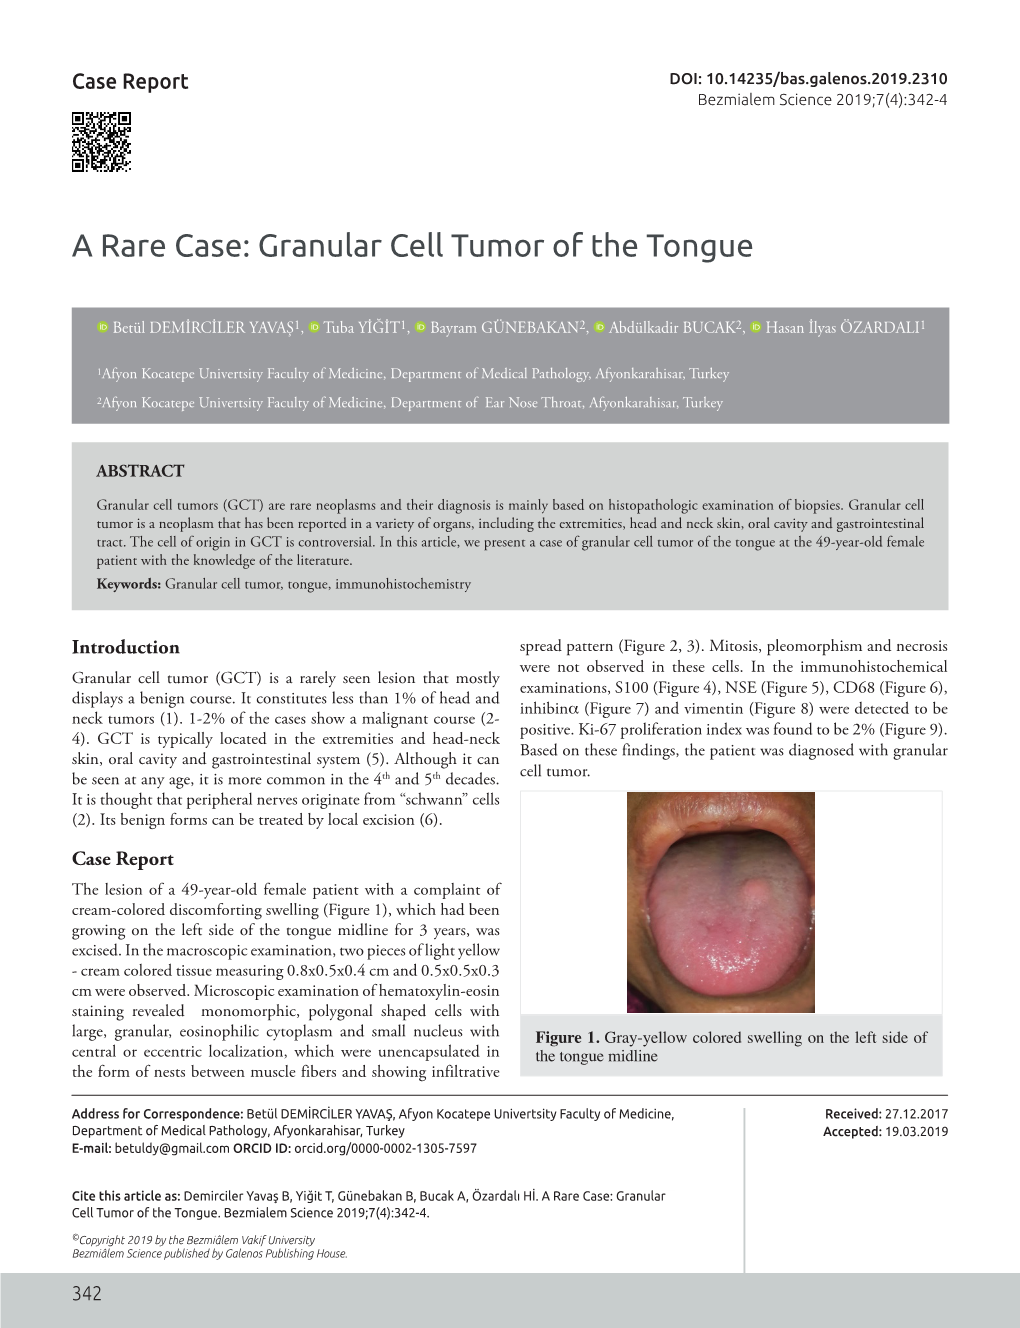 A Rare Case: Granular Cell Tumor of the Tongue